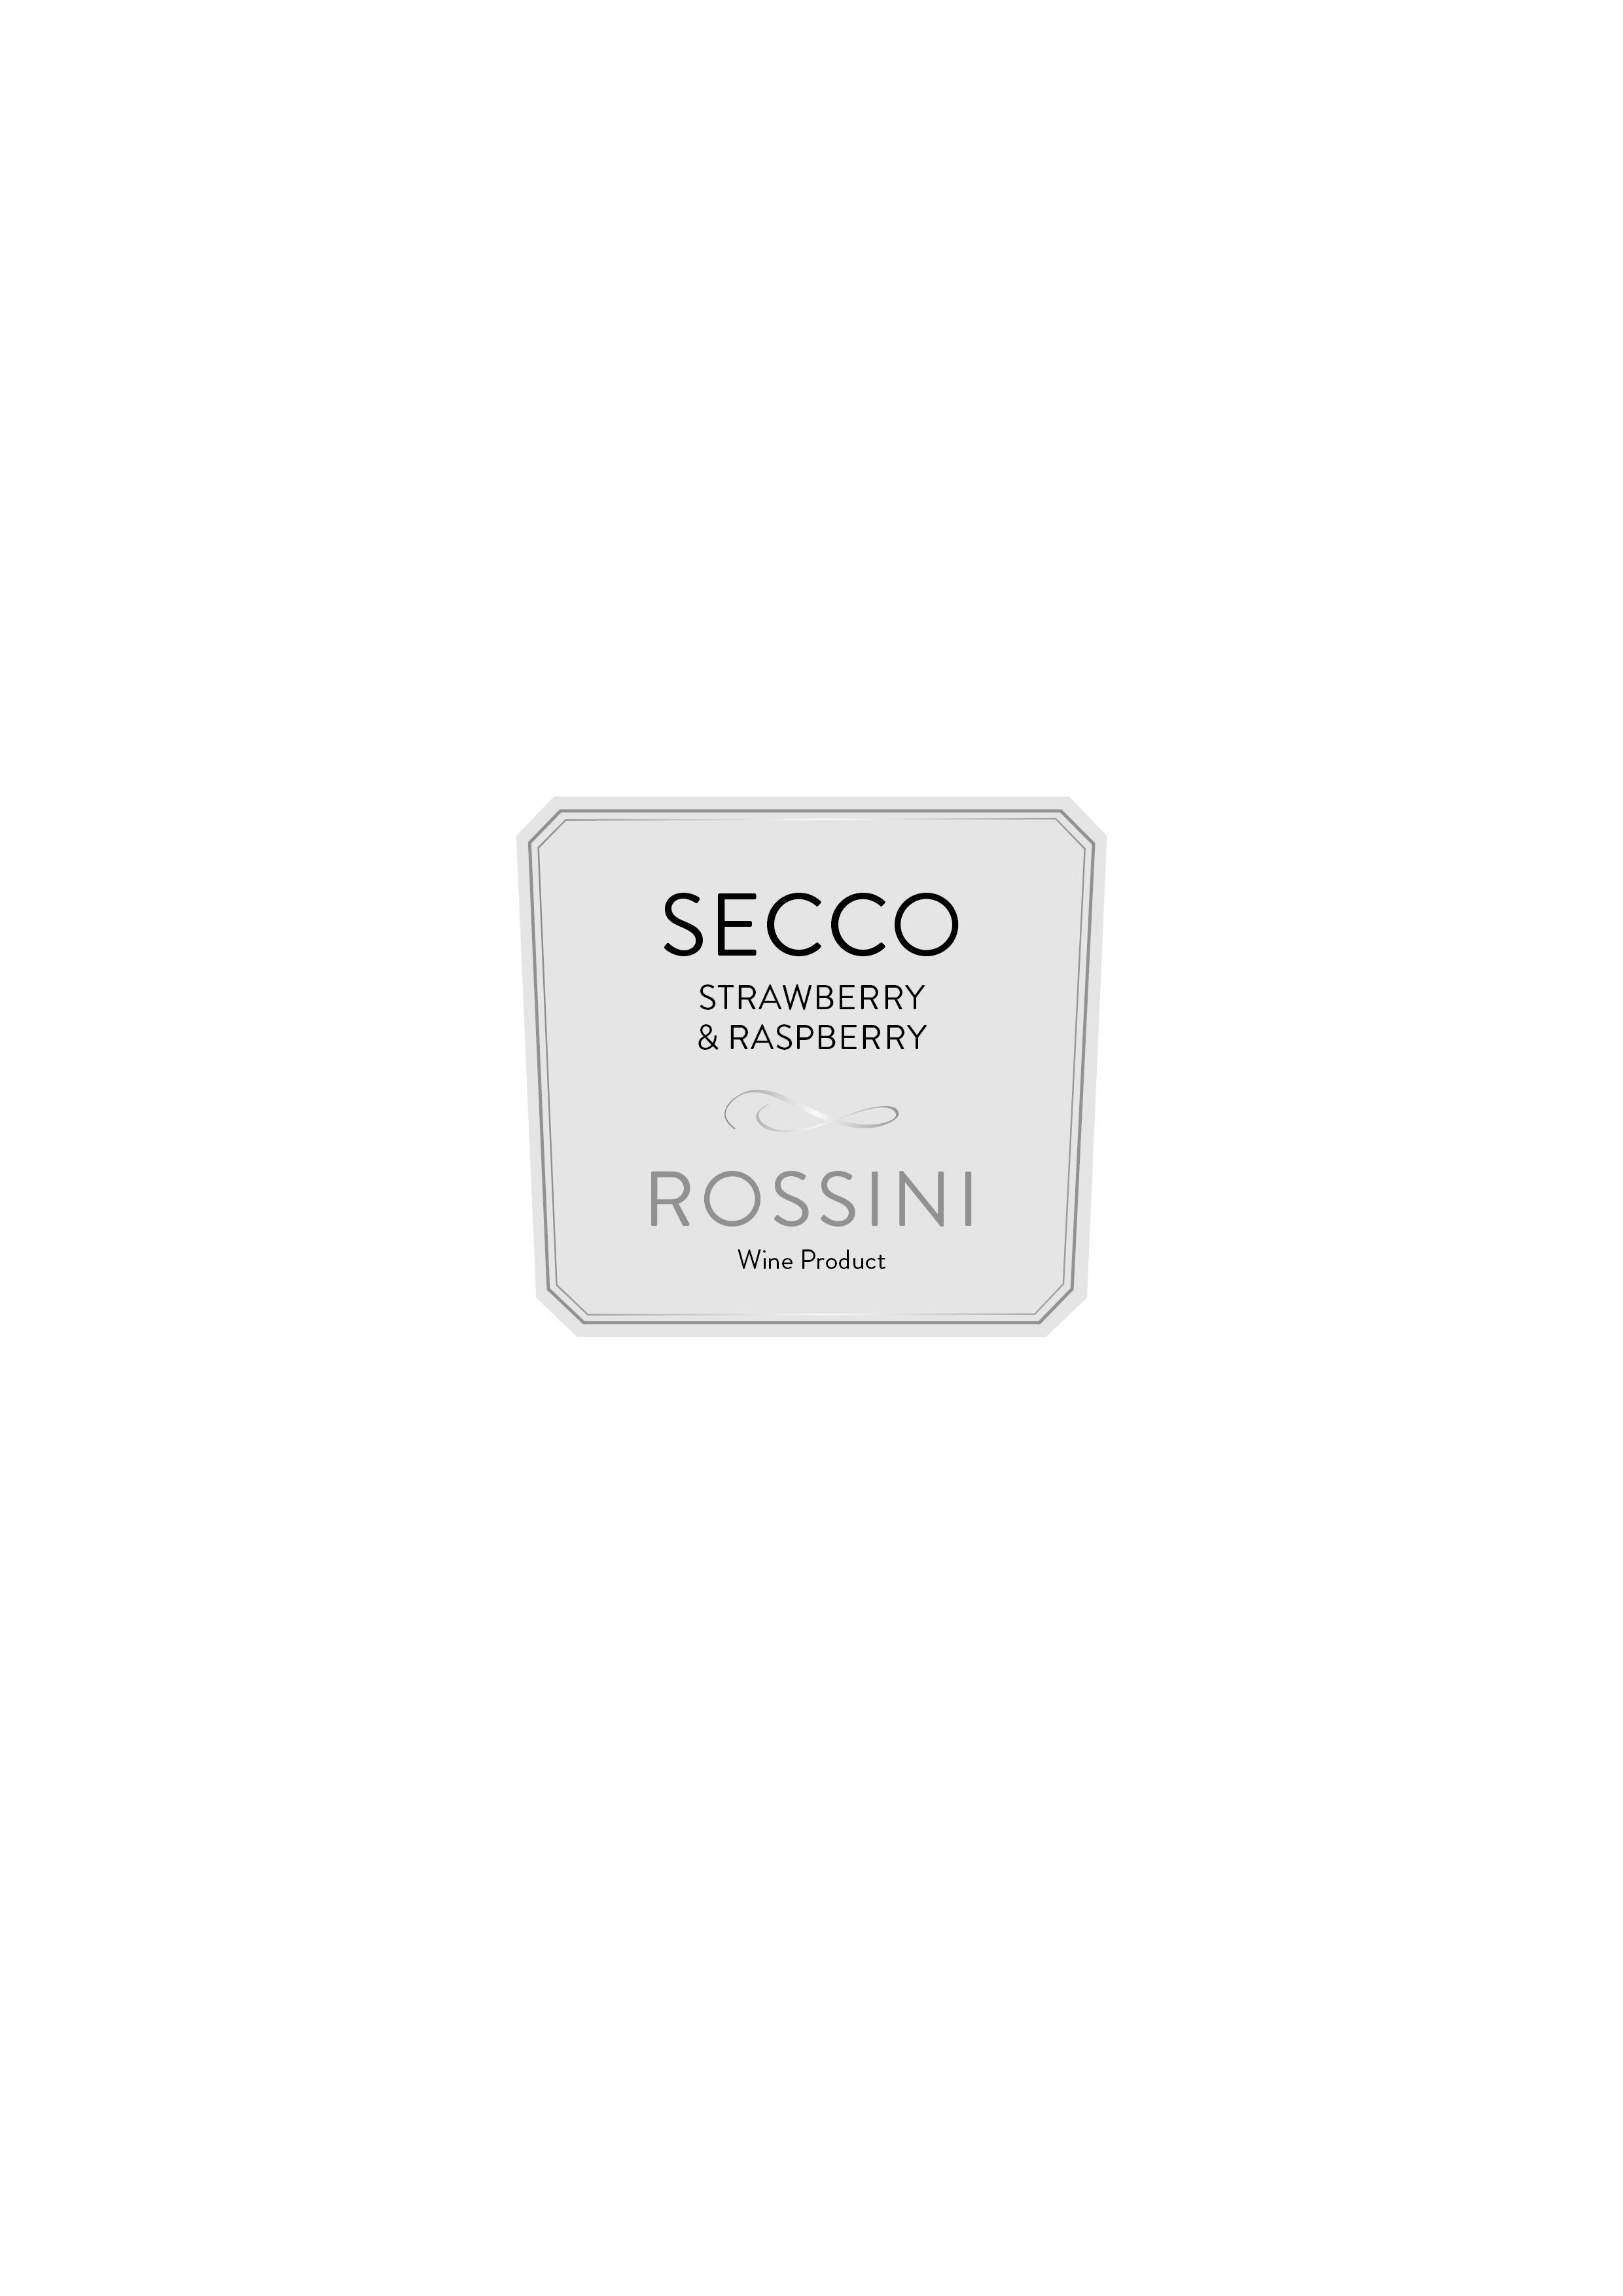  SECCO STRAWBERRY RASPBERRY ROSSINI WINE PRODUCT